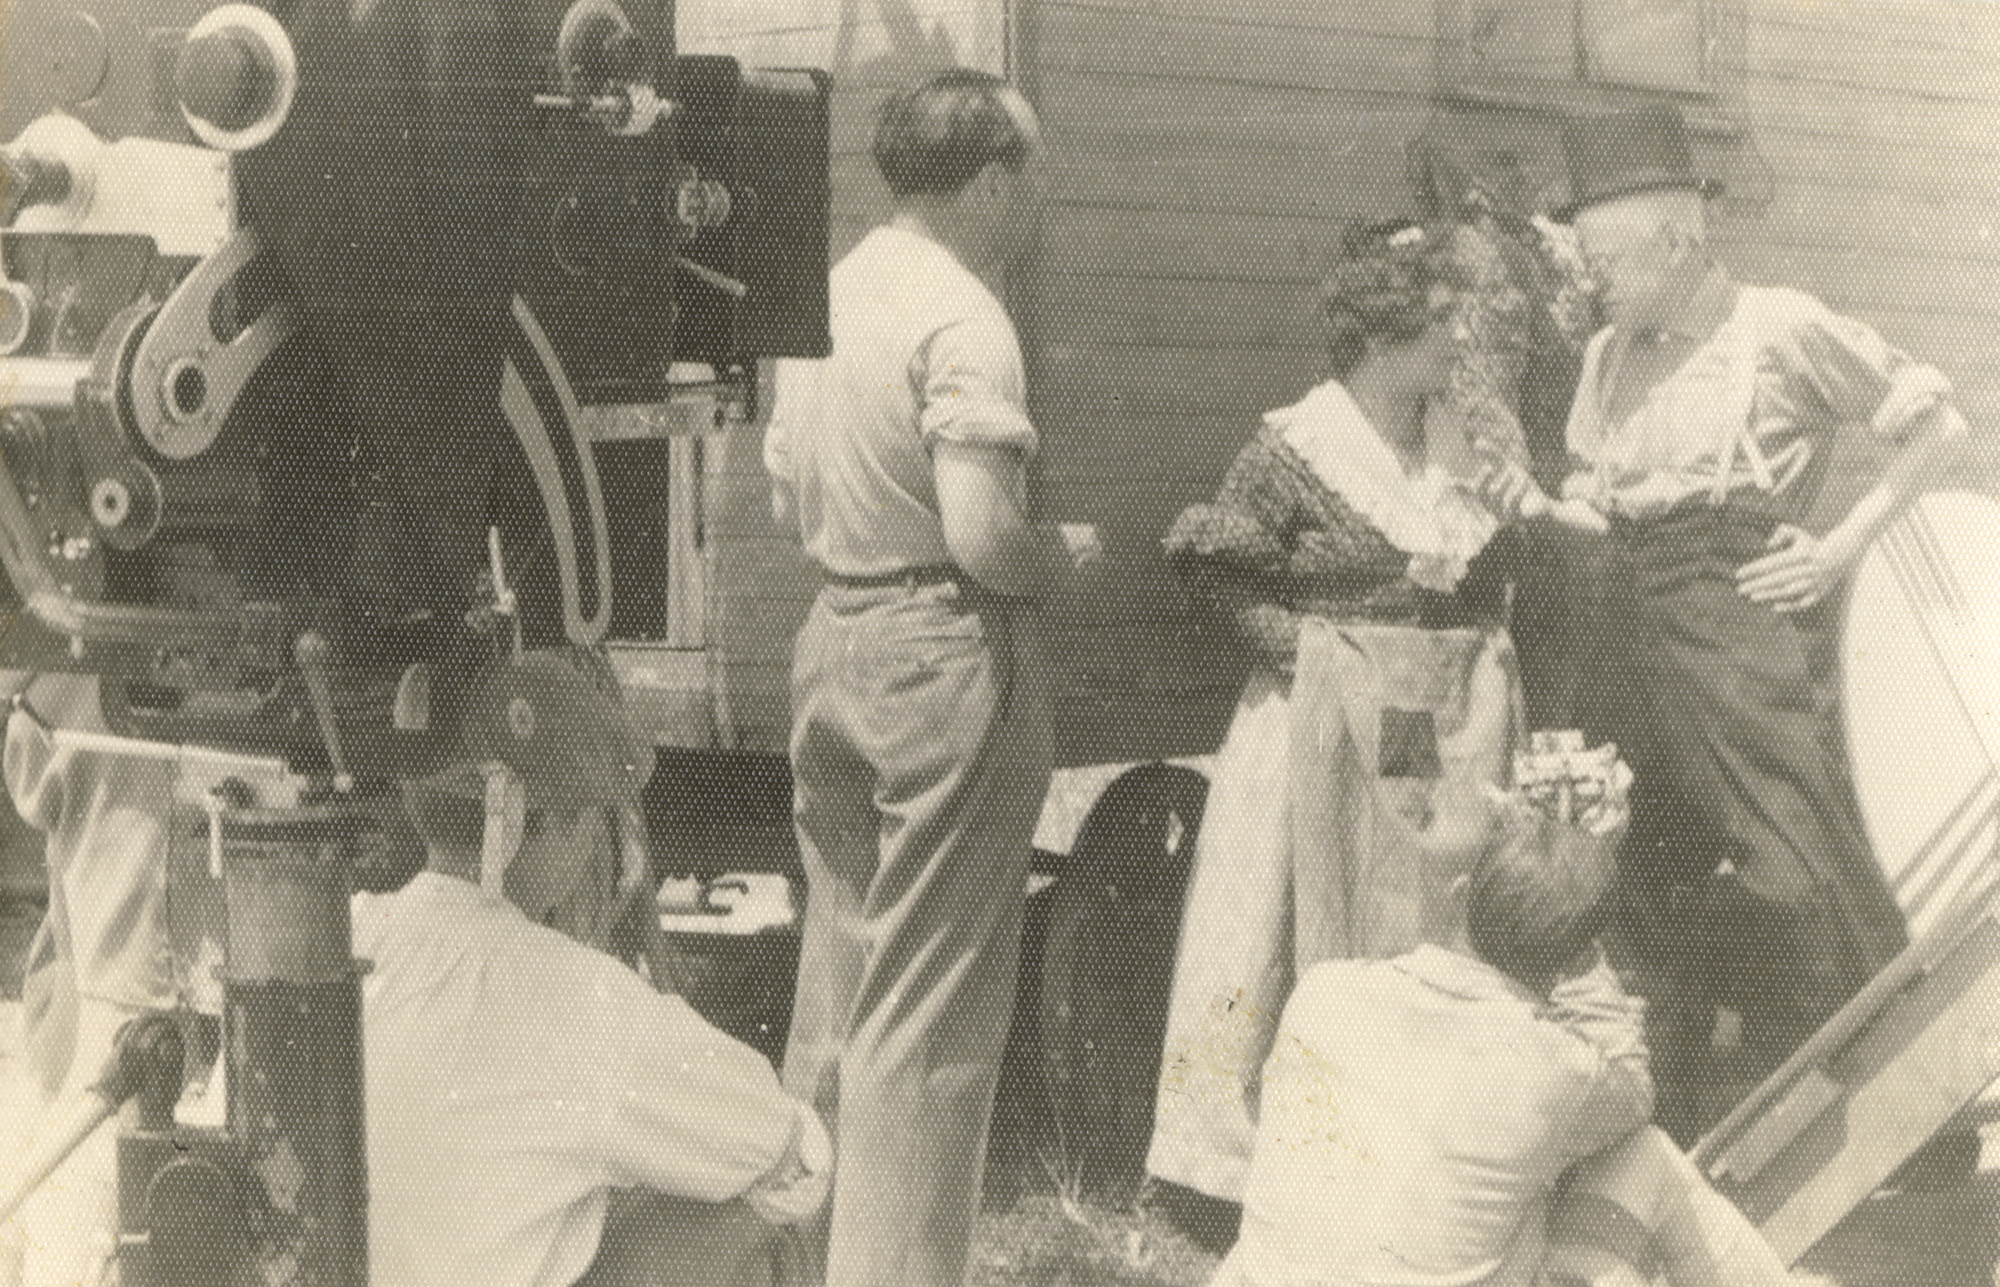 Max Ophüls, Max Ophüls, Karl Valentin und Liesl Karlstadt bei Dreharbeiten des Films Die verkaufte Braut, 1932